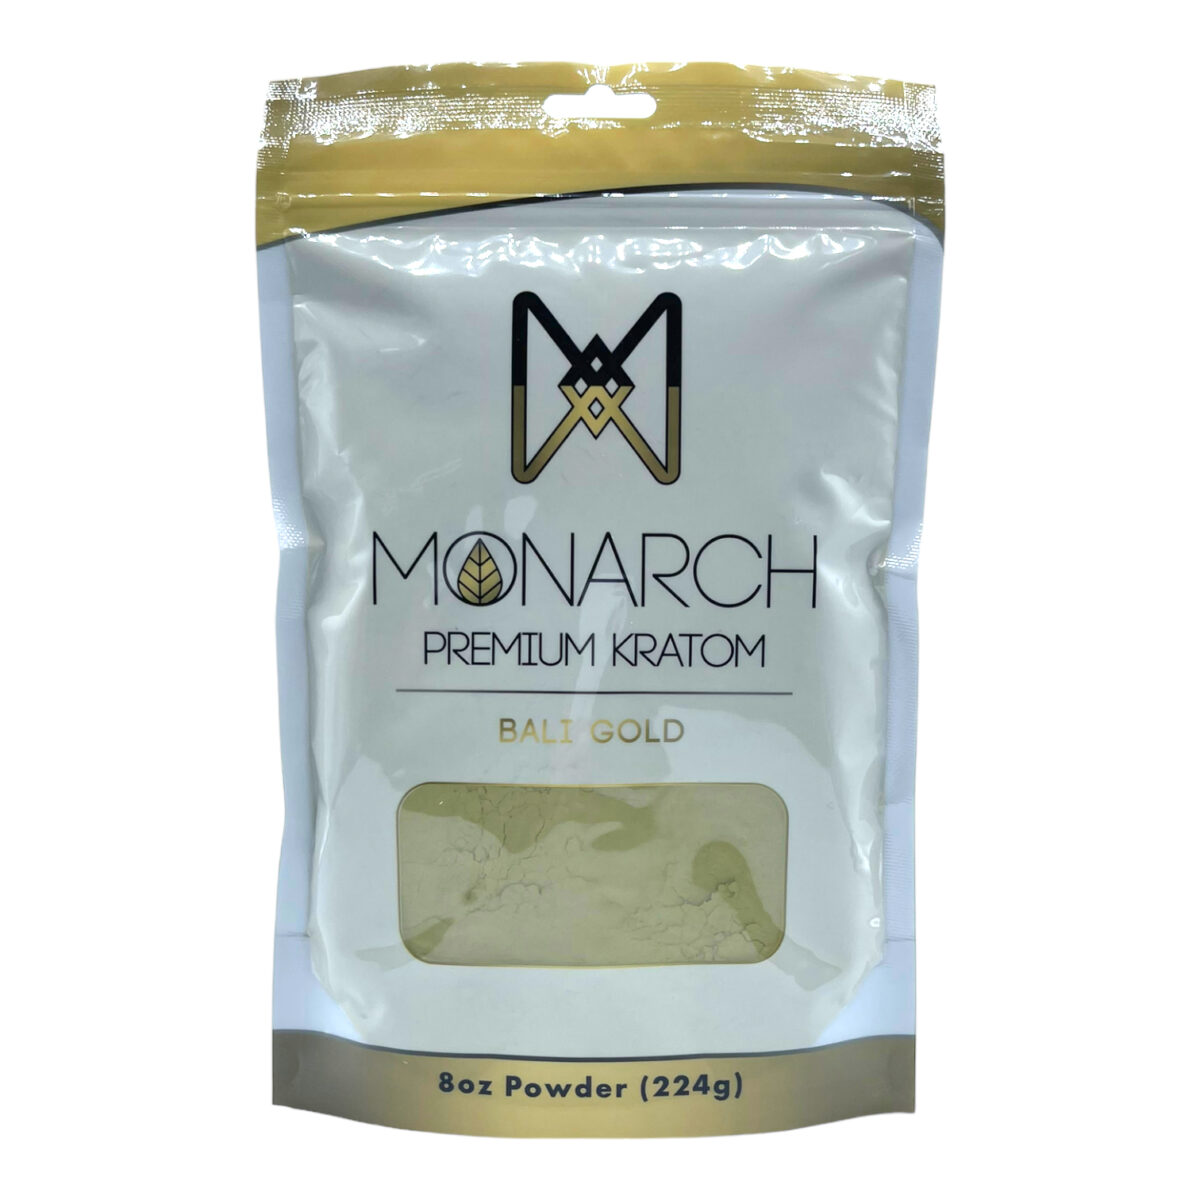 Monarch Bali Gold Kratom Powder – 8oz